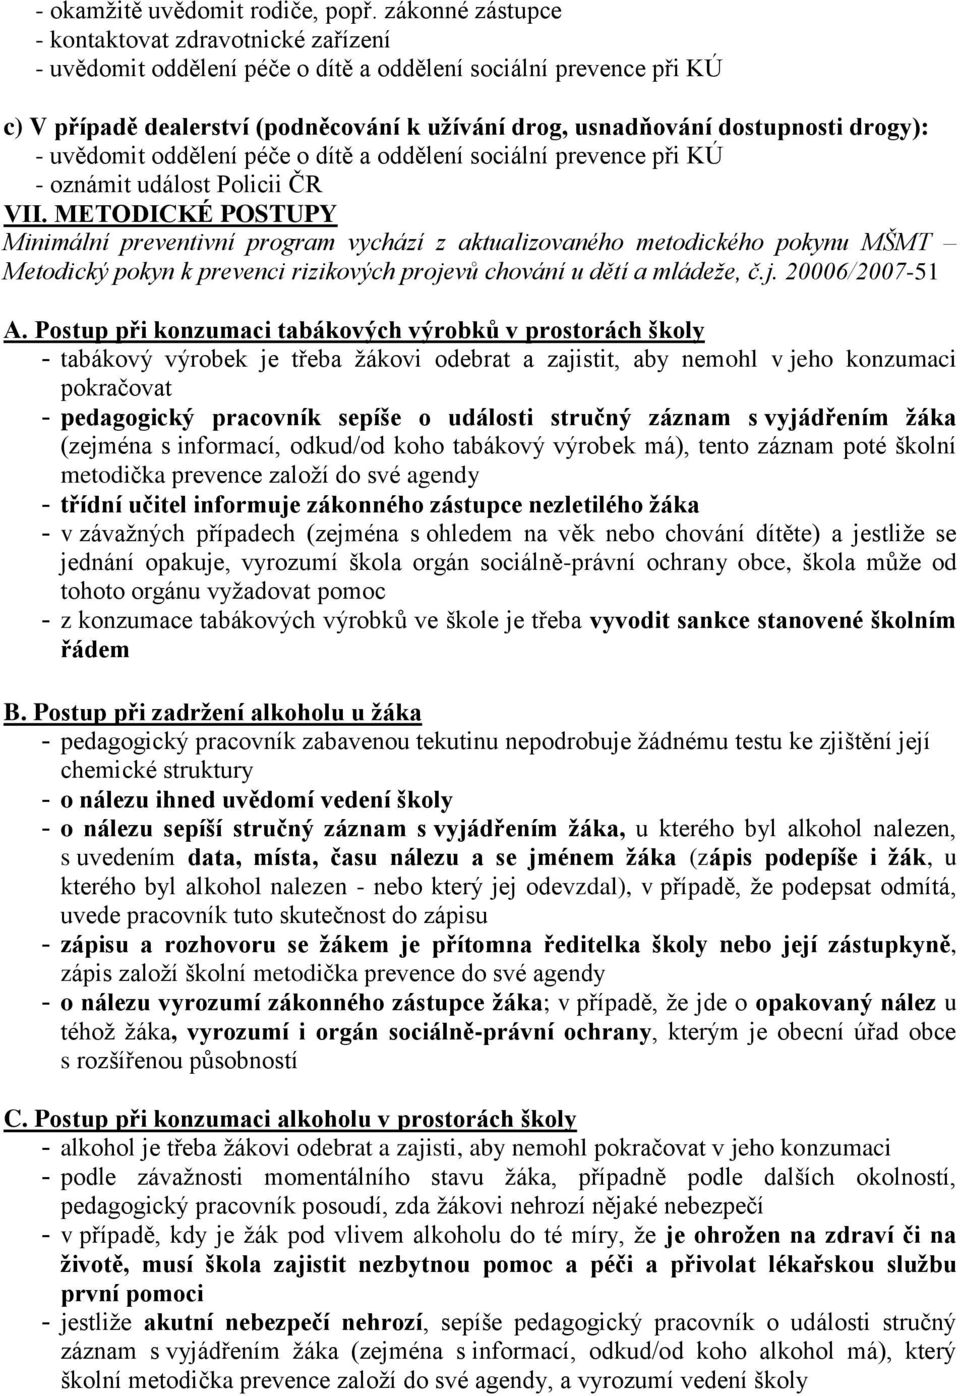 drogy): - uvědomit oddělení péče o dítě a oddělení sociální prevence při KÚ - oznámit událost Policii ČR VII.